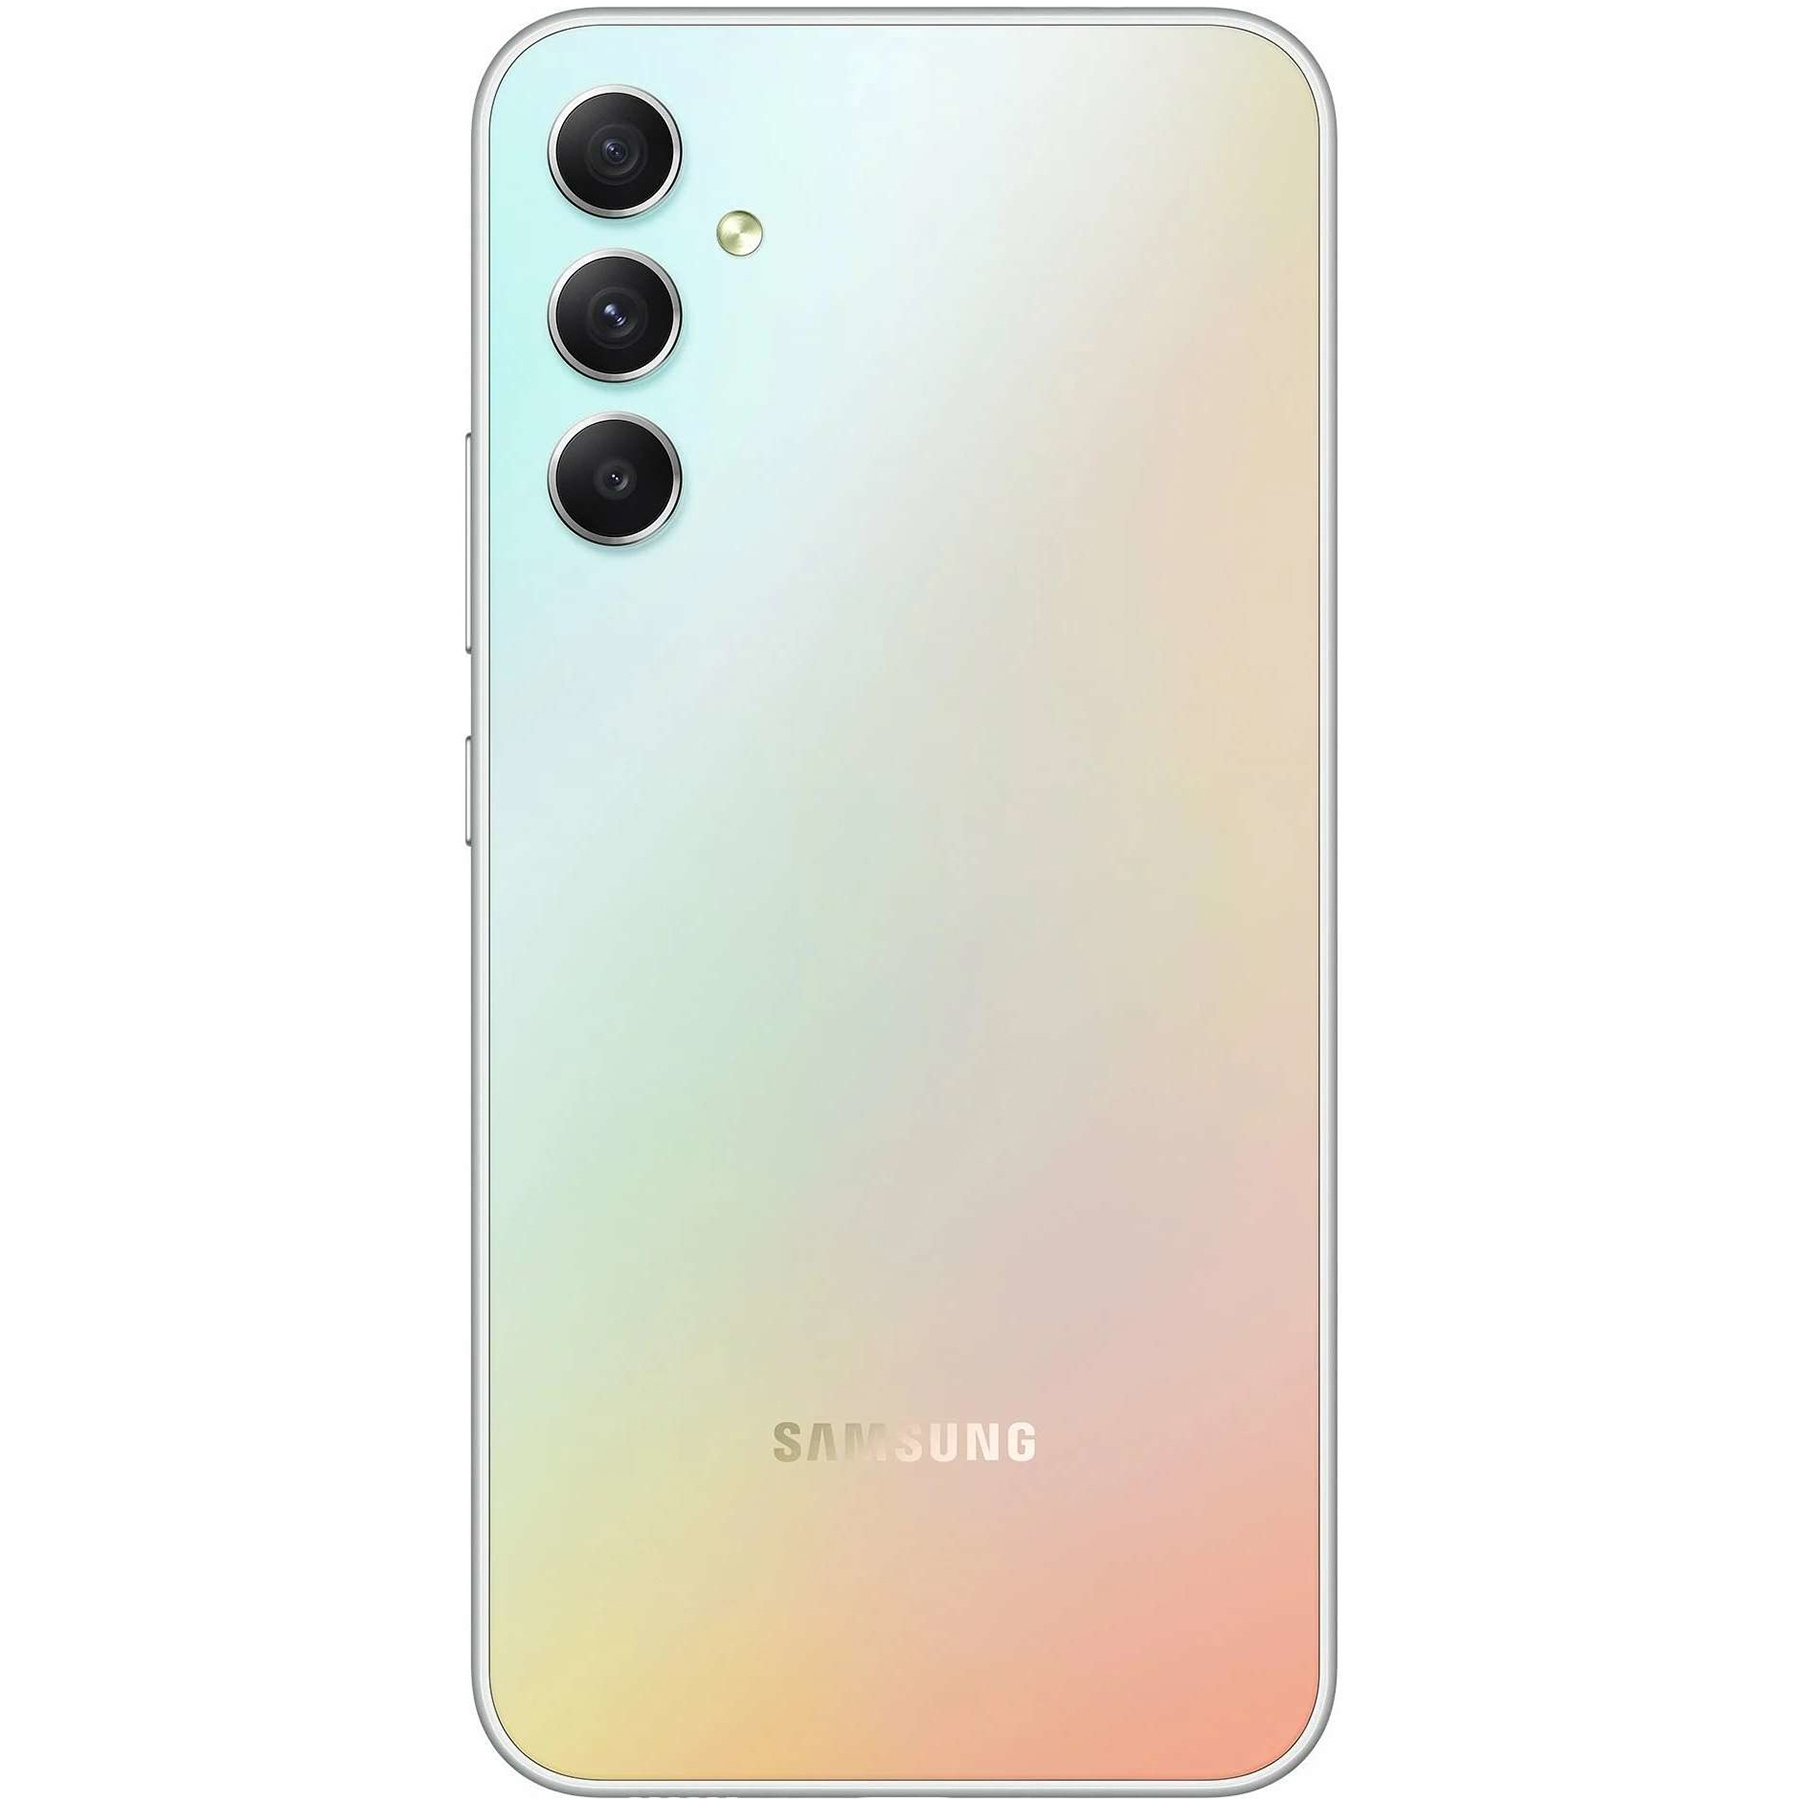 گوشی موبایل سامسونگ مدل Galaxy A34 5G دو سیم کارت ظرفیت 256 گیگابایت و رم 8 گیگابایت